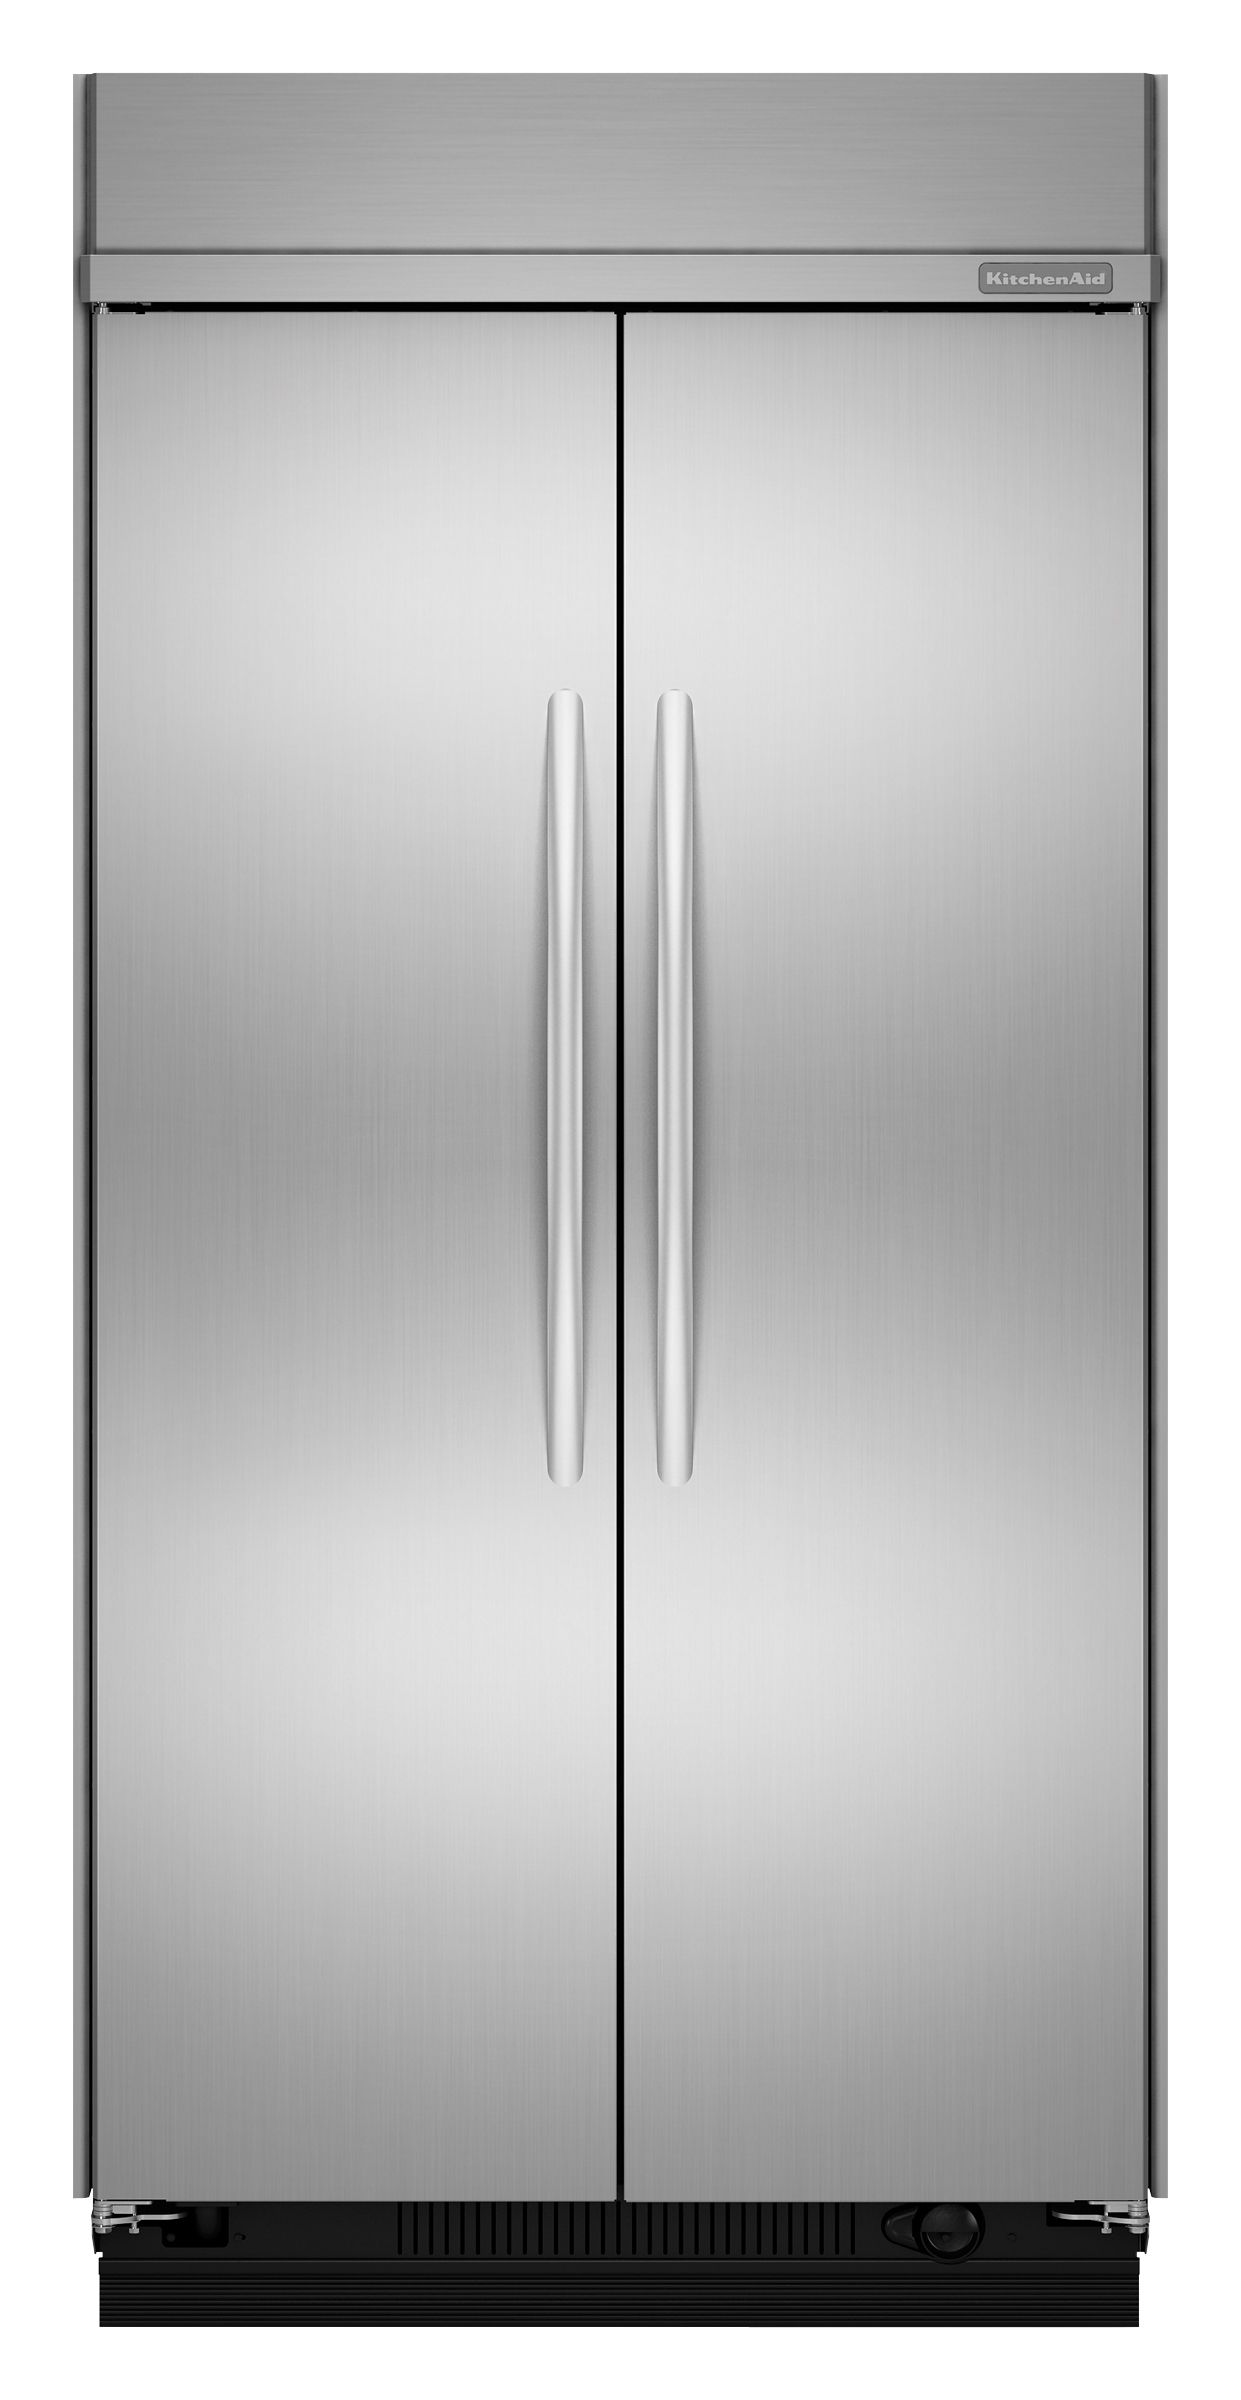 48" Built-In Refrigerator logo